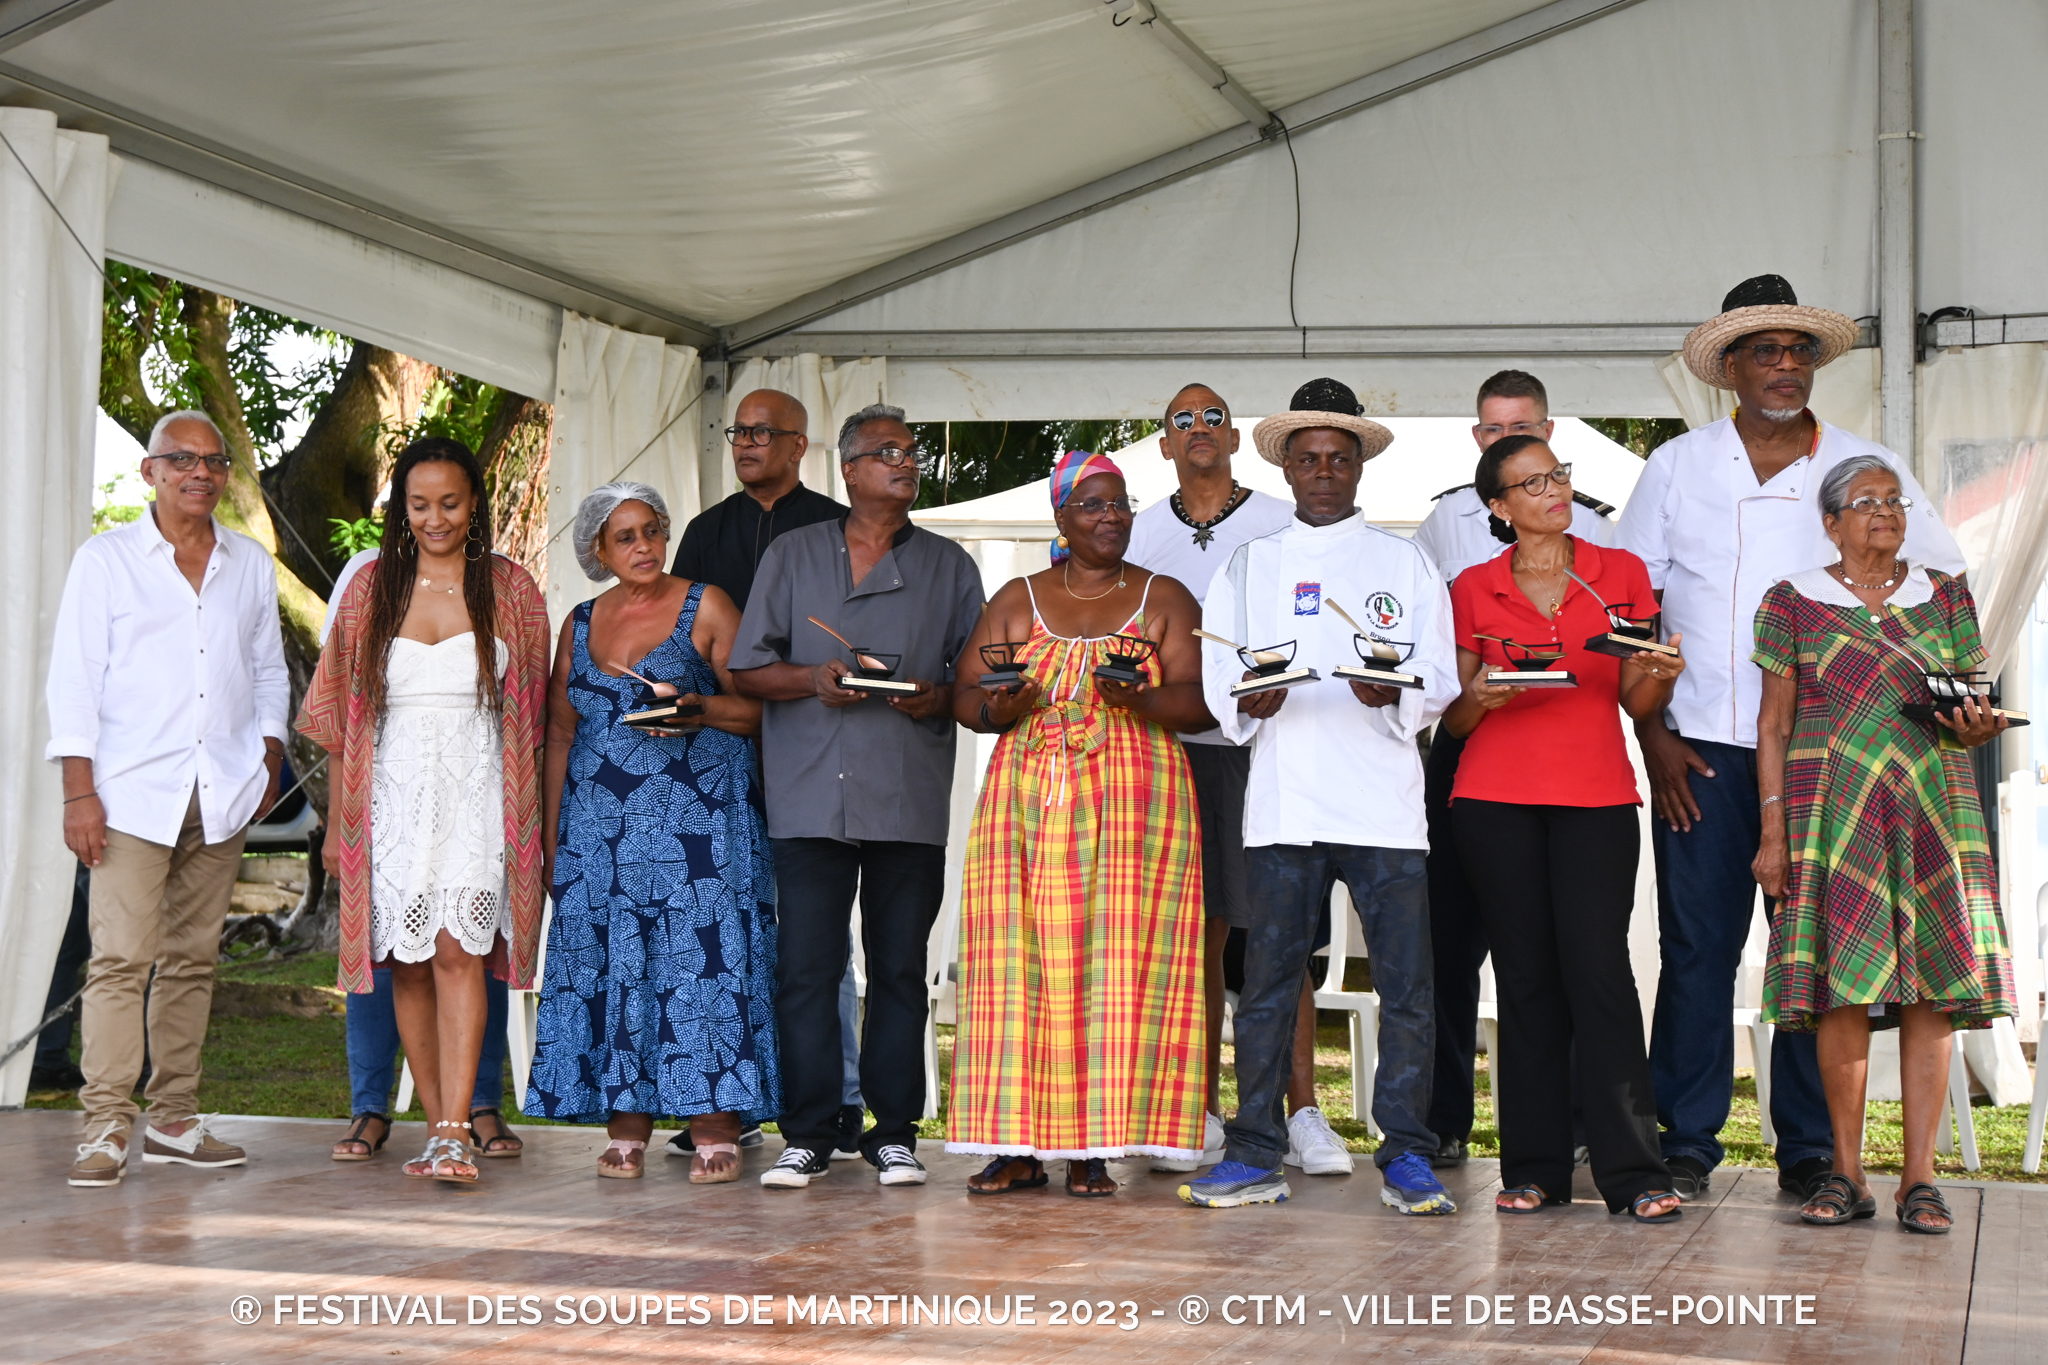     Troisième édition du « Festival de la soupe de Martinique » à Basse-Pointe

